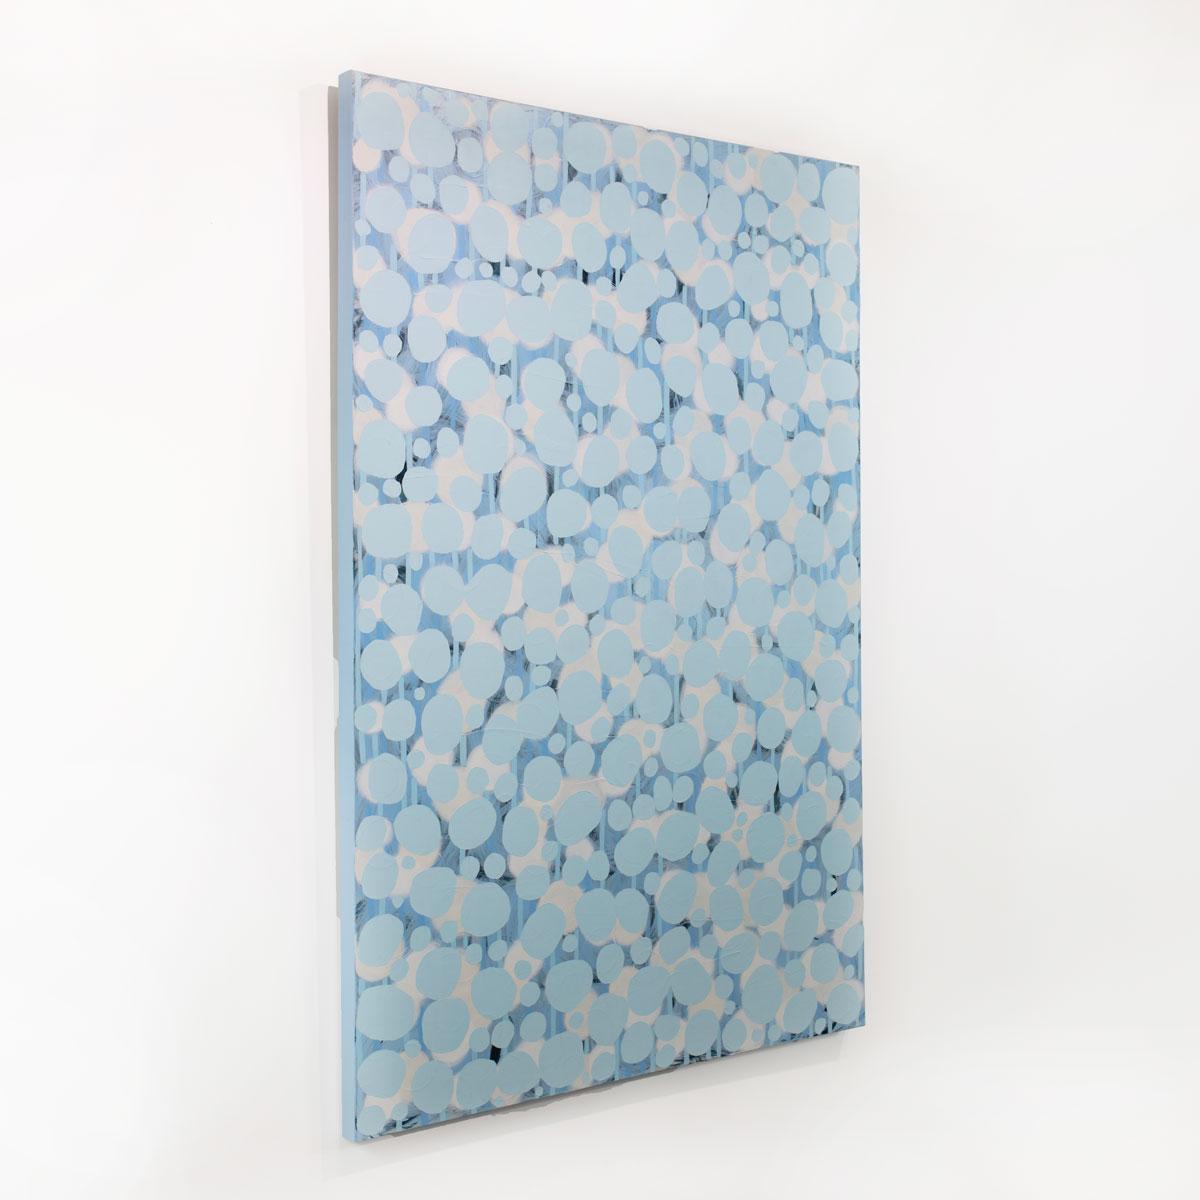 Ce grand tableau abstrait de Sofie Swann présente une palette de bleu clair et de blanc, avec des formes circulaires organiques superposées sur toute la toile. Cette peinture est réalisée sur une toile enveloppée dans une galerie et dont les côtés